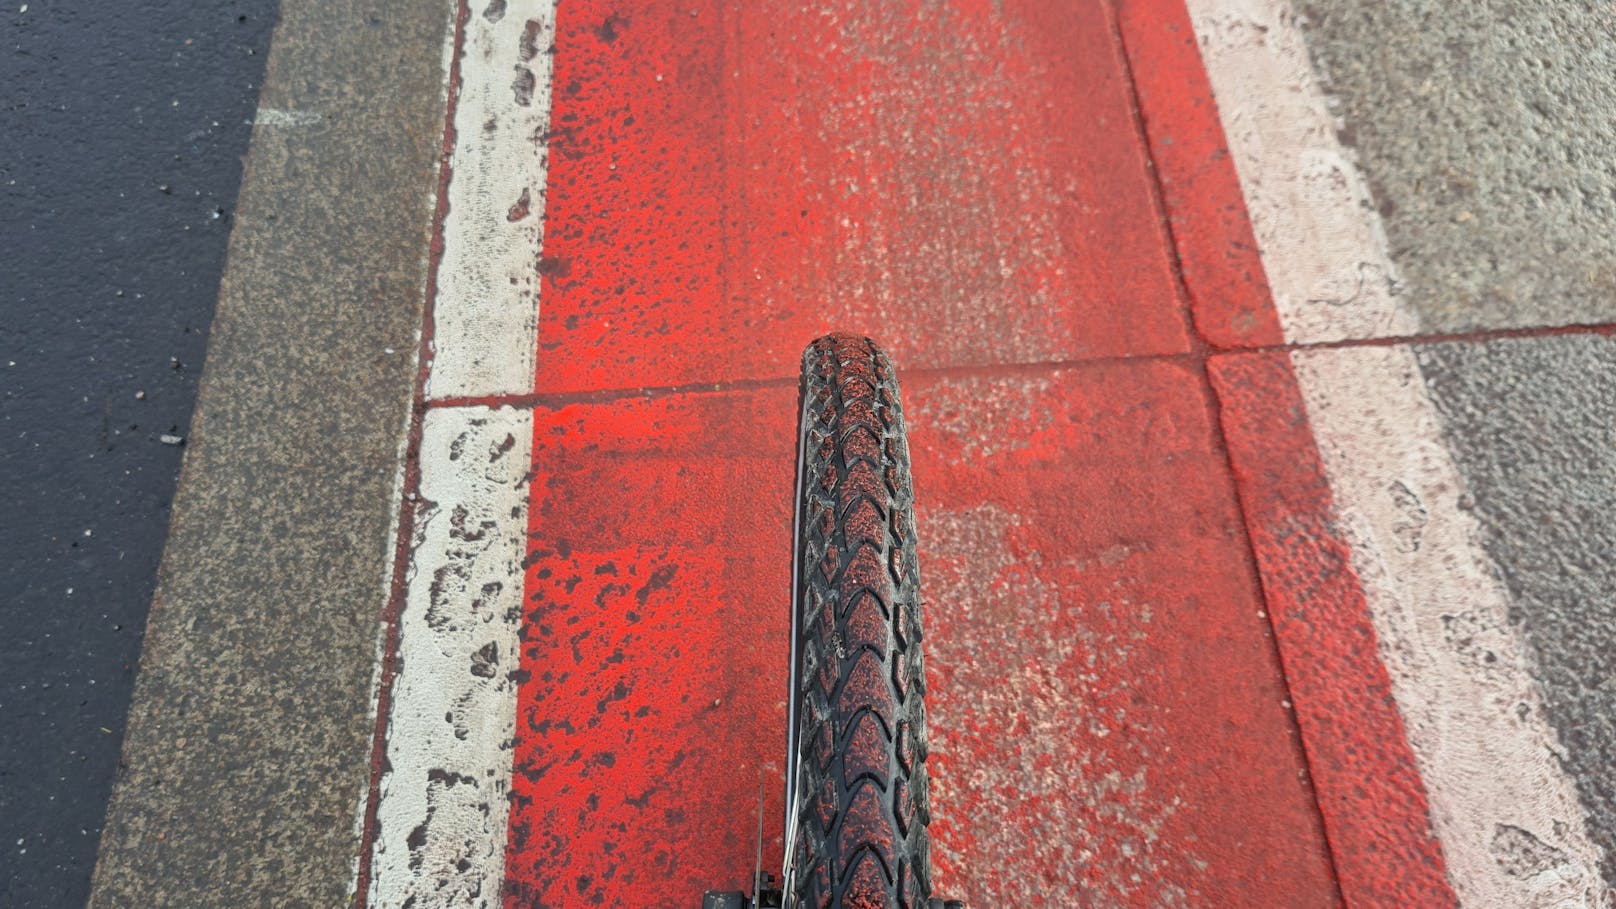 Weil der Granit der Fahrbahn die Farbe nicht gut aufnimmt, löst sie sich im Winter durch das Streusalz ab.